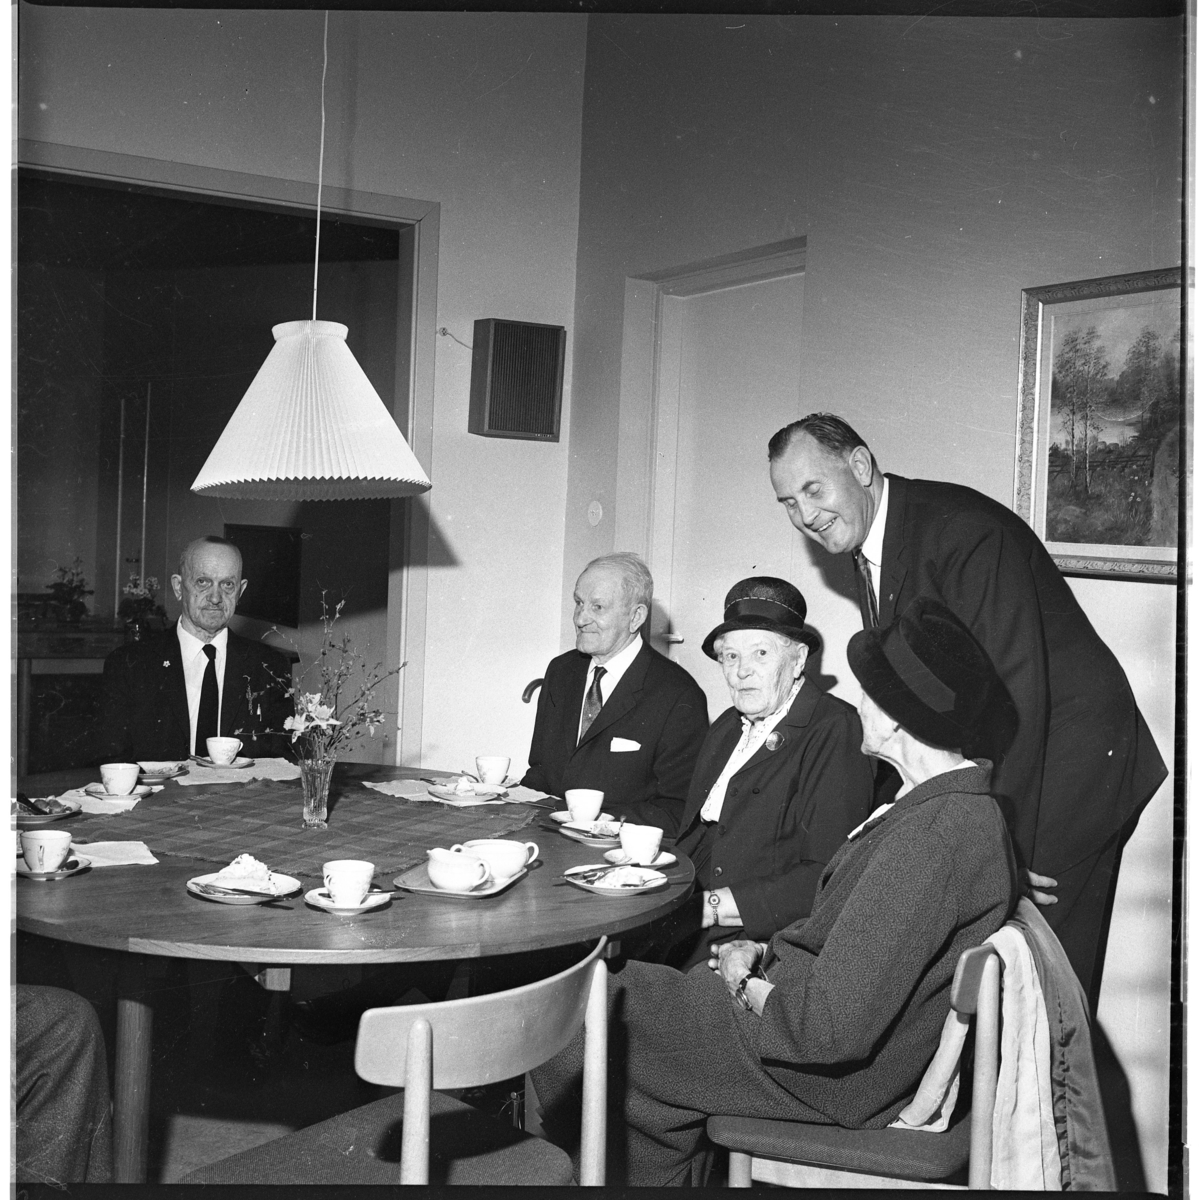 Två äldre män och två äldre kvinnor med hatt på huvudet sitter vid ett runt bord med kaffekoppar. Nils Jarenskog står hukad över kvinnorna. En "utfärd" troligen med Gränna Sångsällskap.